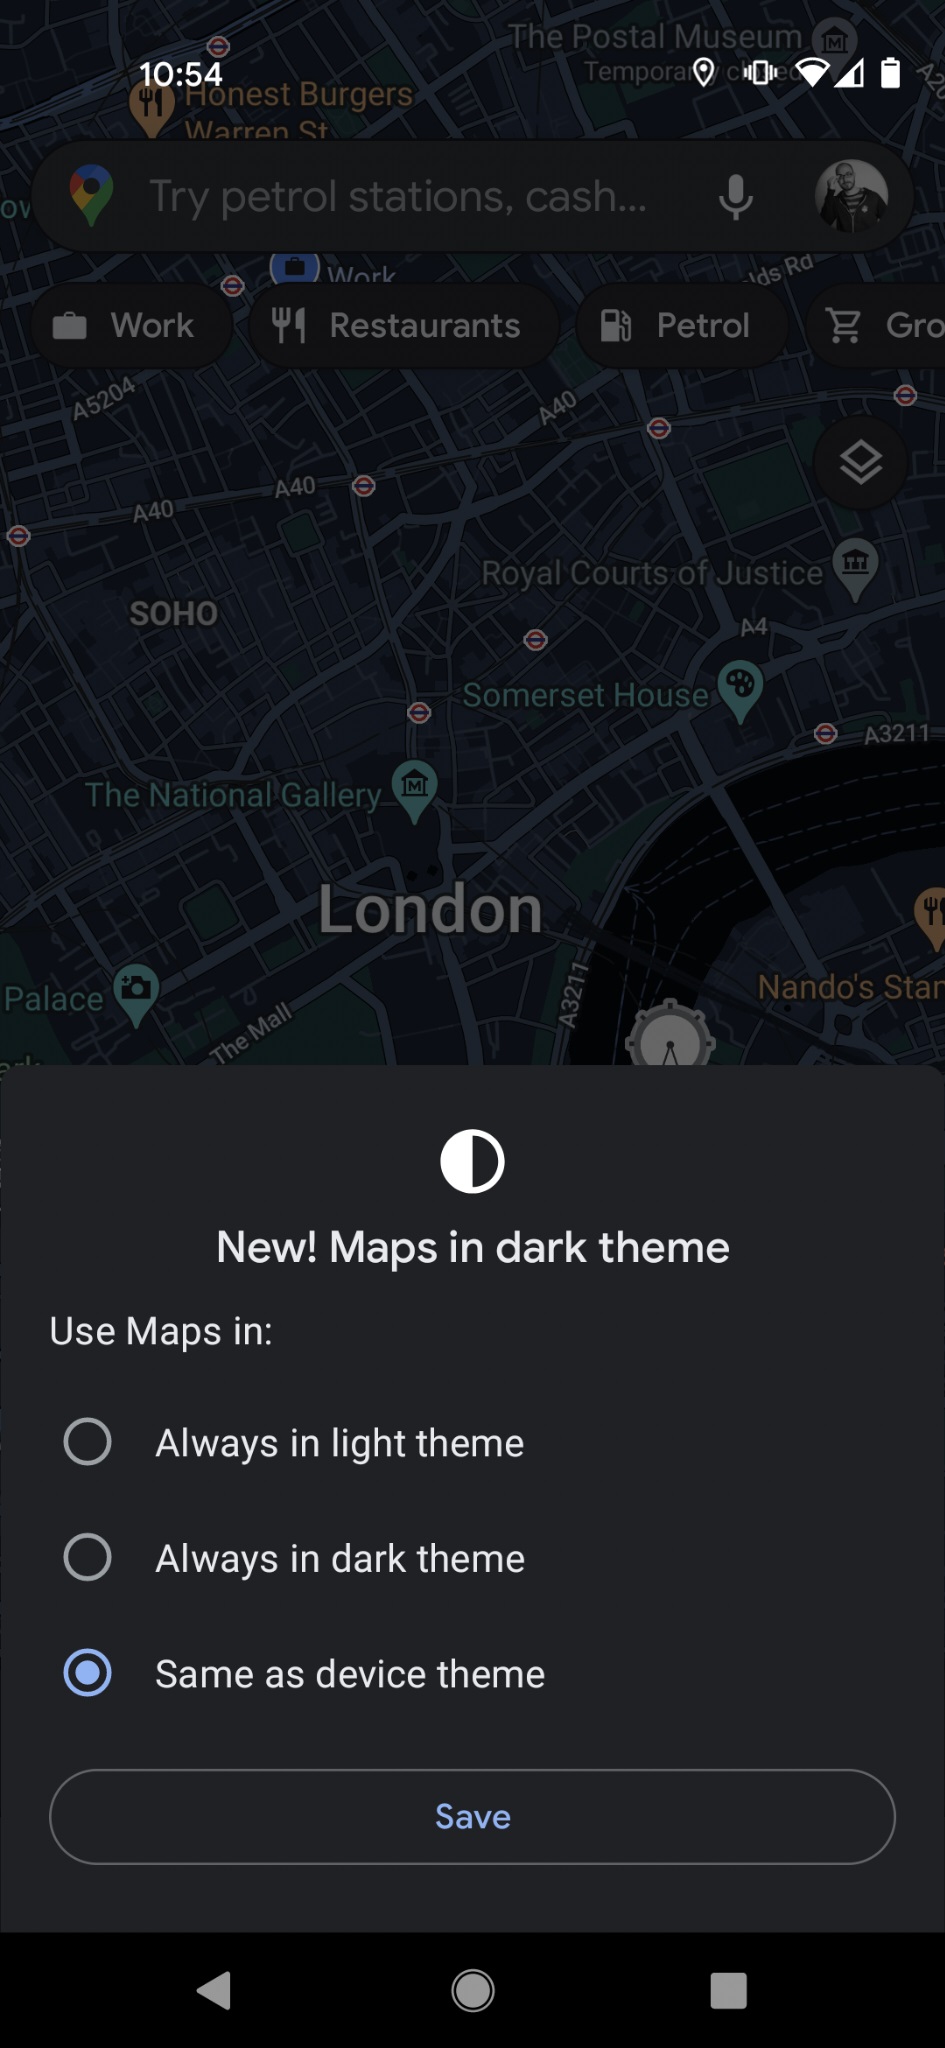 Как использовать темный режим Google Maps - Включить темную тему